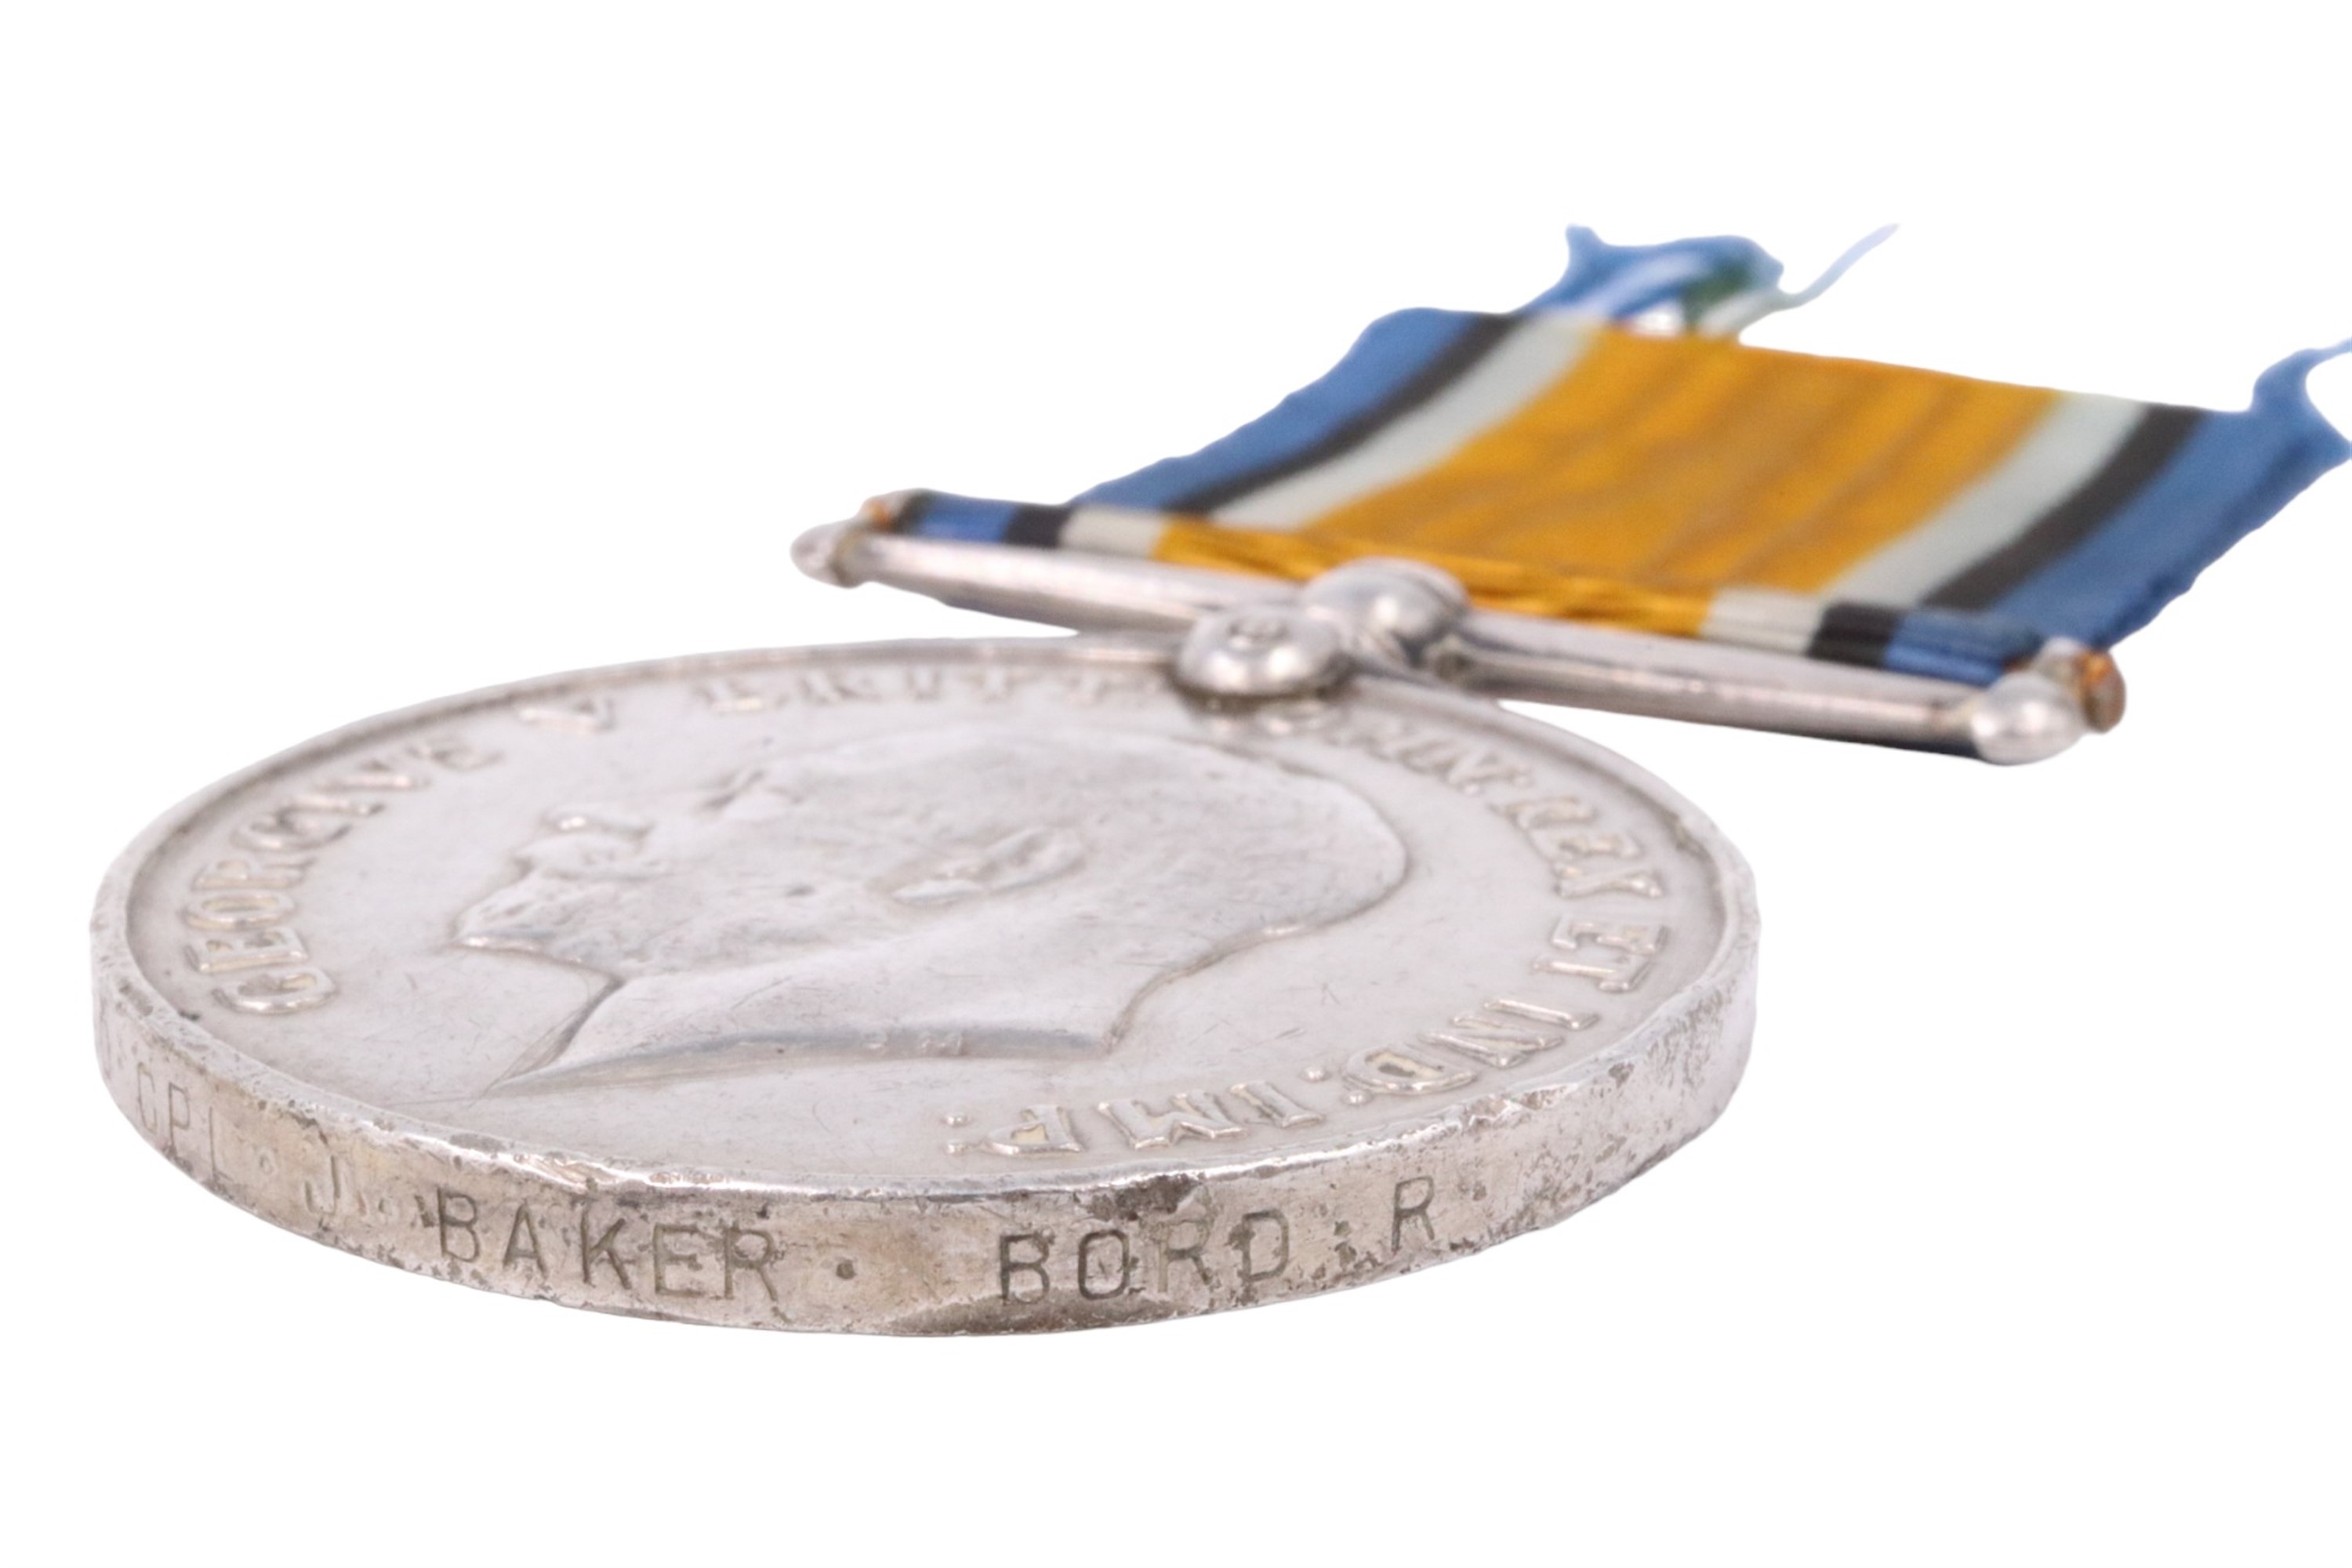 A British War Medal to 10590 Corp. James Baker, 2nd Border Regiment - Image 5 of 5